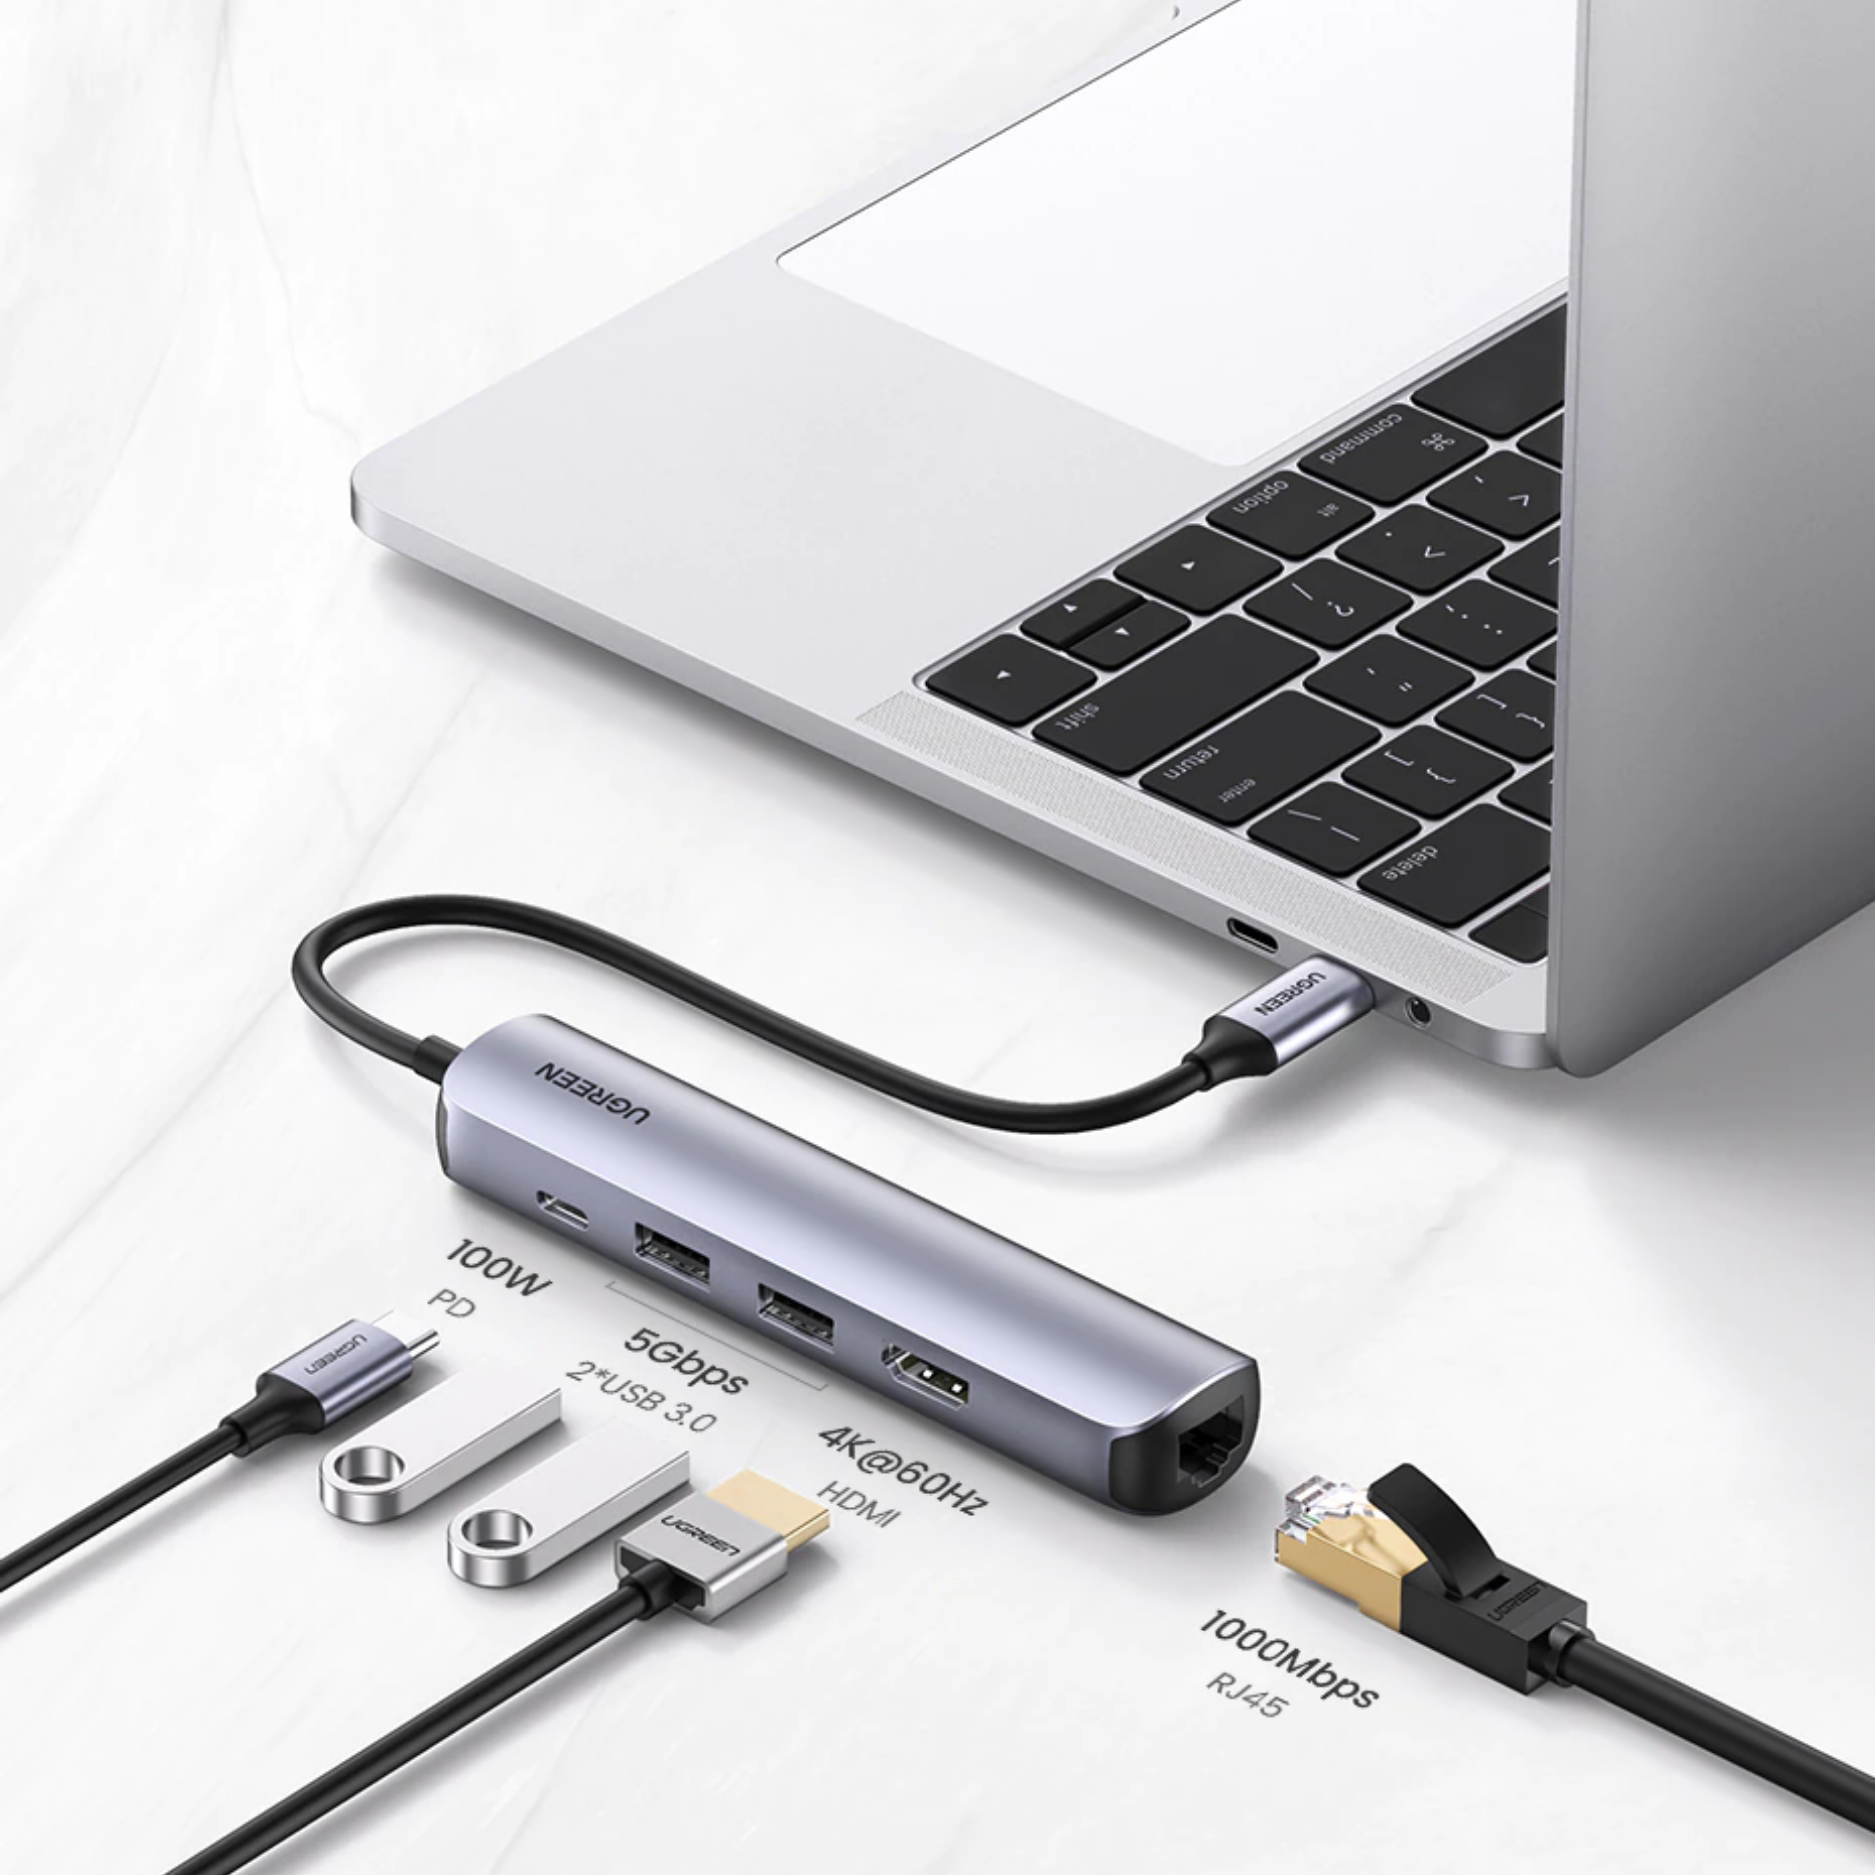 Hub adaptador USB-C Ugreen 5-en-1 RJ45, HDMI, USB 3.0, USB-C (10919)